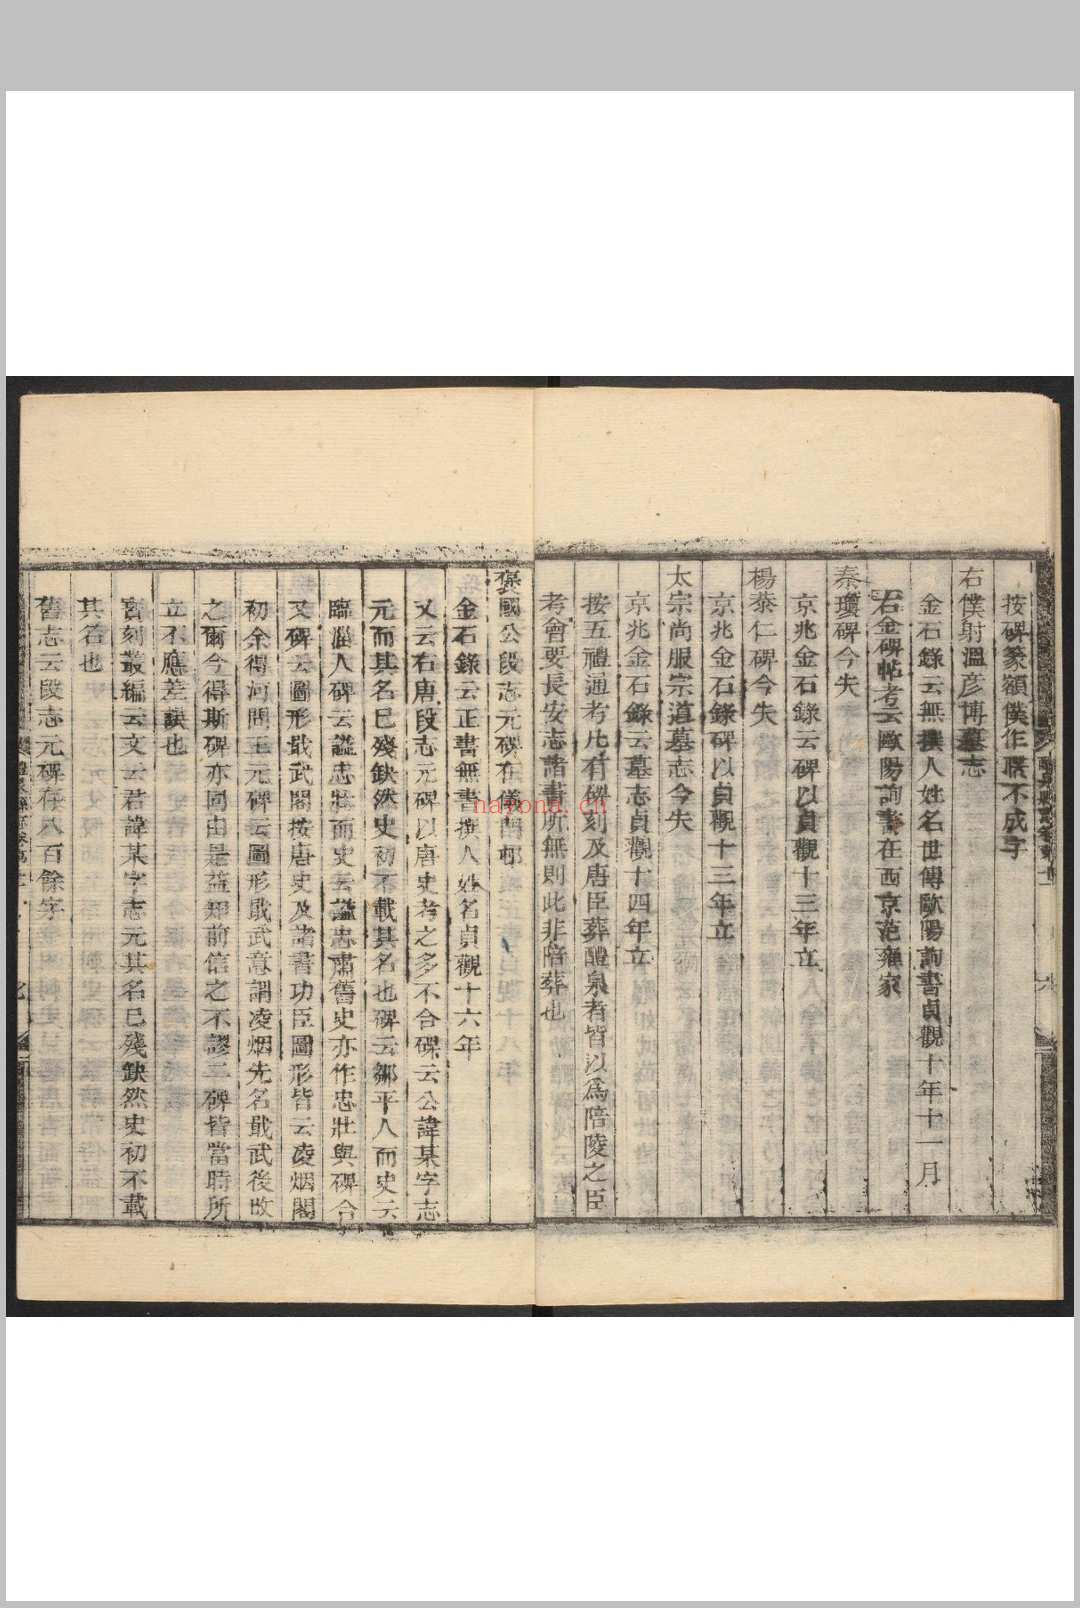 醴泉县志  十四卷 蒋骑昌, 孙星衍撰.清乾隆49年 [1784]